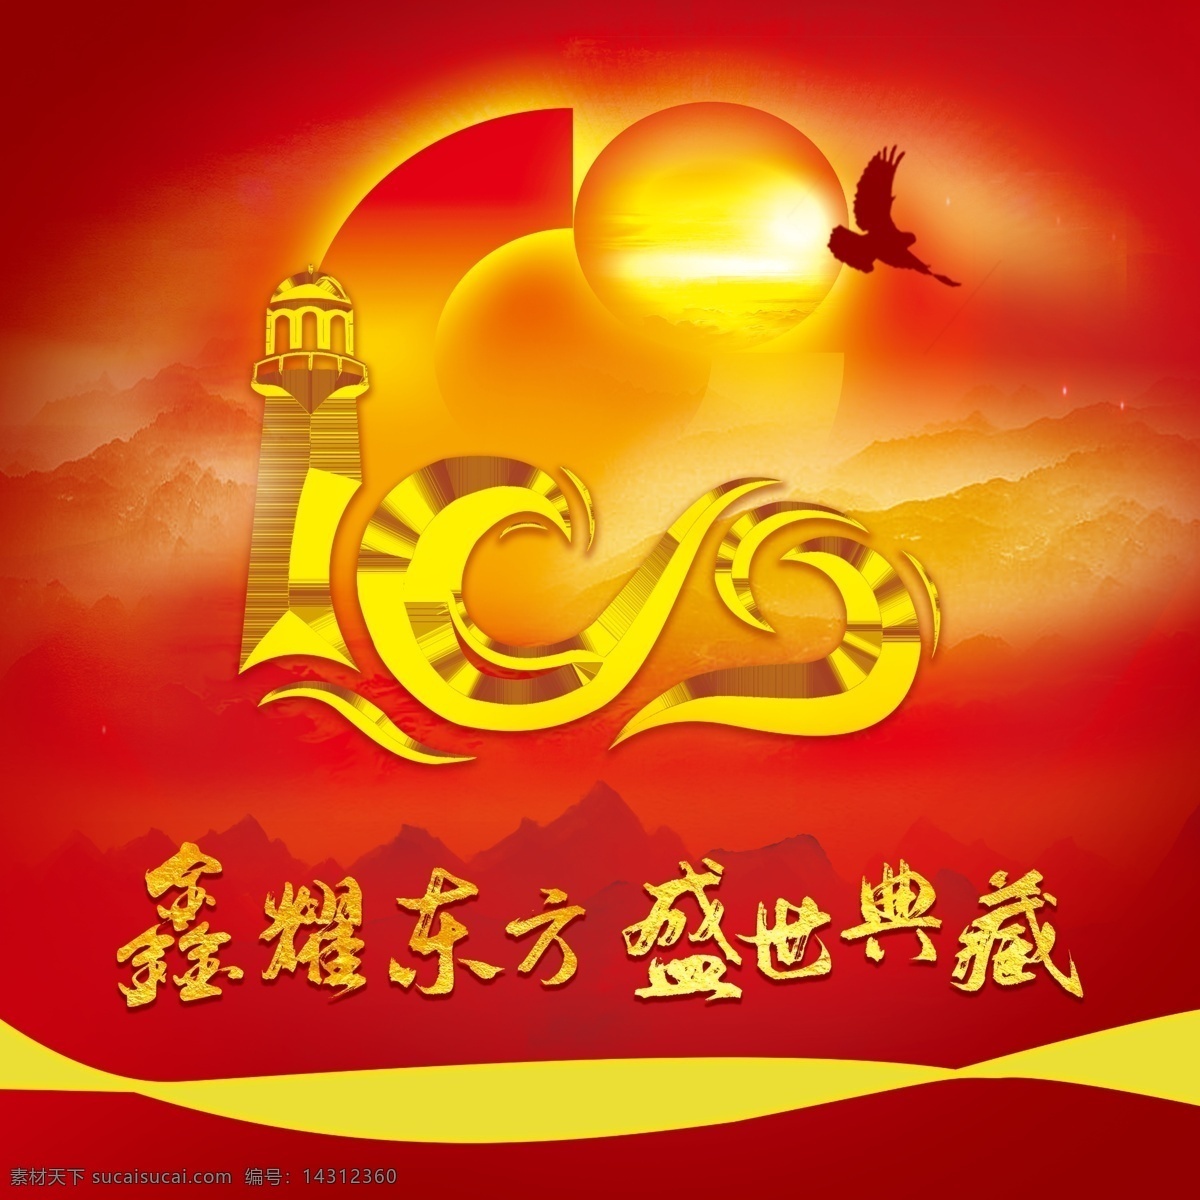 鑫耀东方 盛世典藏图片 盛世百年 开门红 中国人寿 保险 2021 年